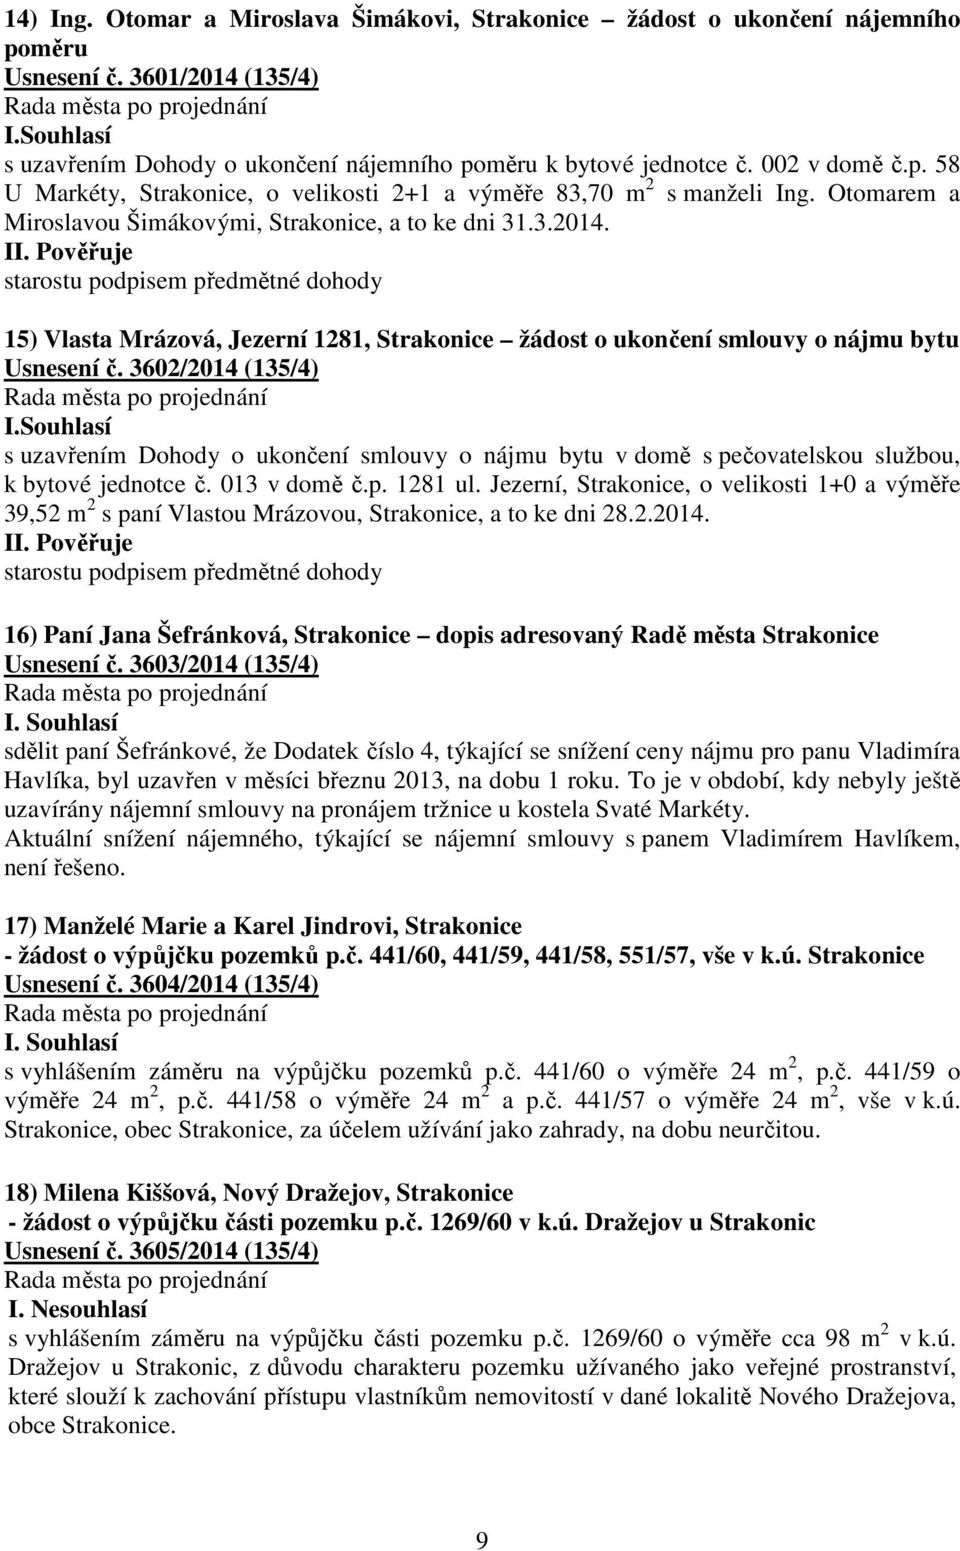 starostu podpisem předmětné dohody 15) Vlasta Mrázová, Jezerní 1281, Strakonice žádost o ukončení smlouvy o nájmu bytu Usnesení č. 3602/2014 (135/4) I.